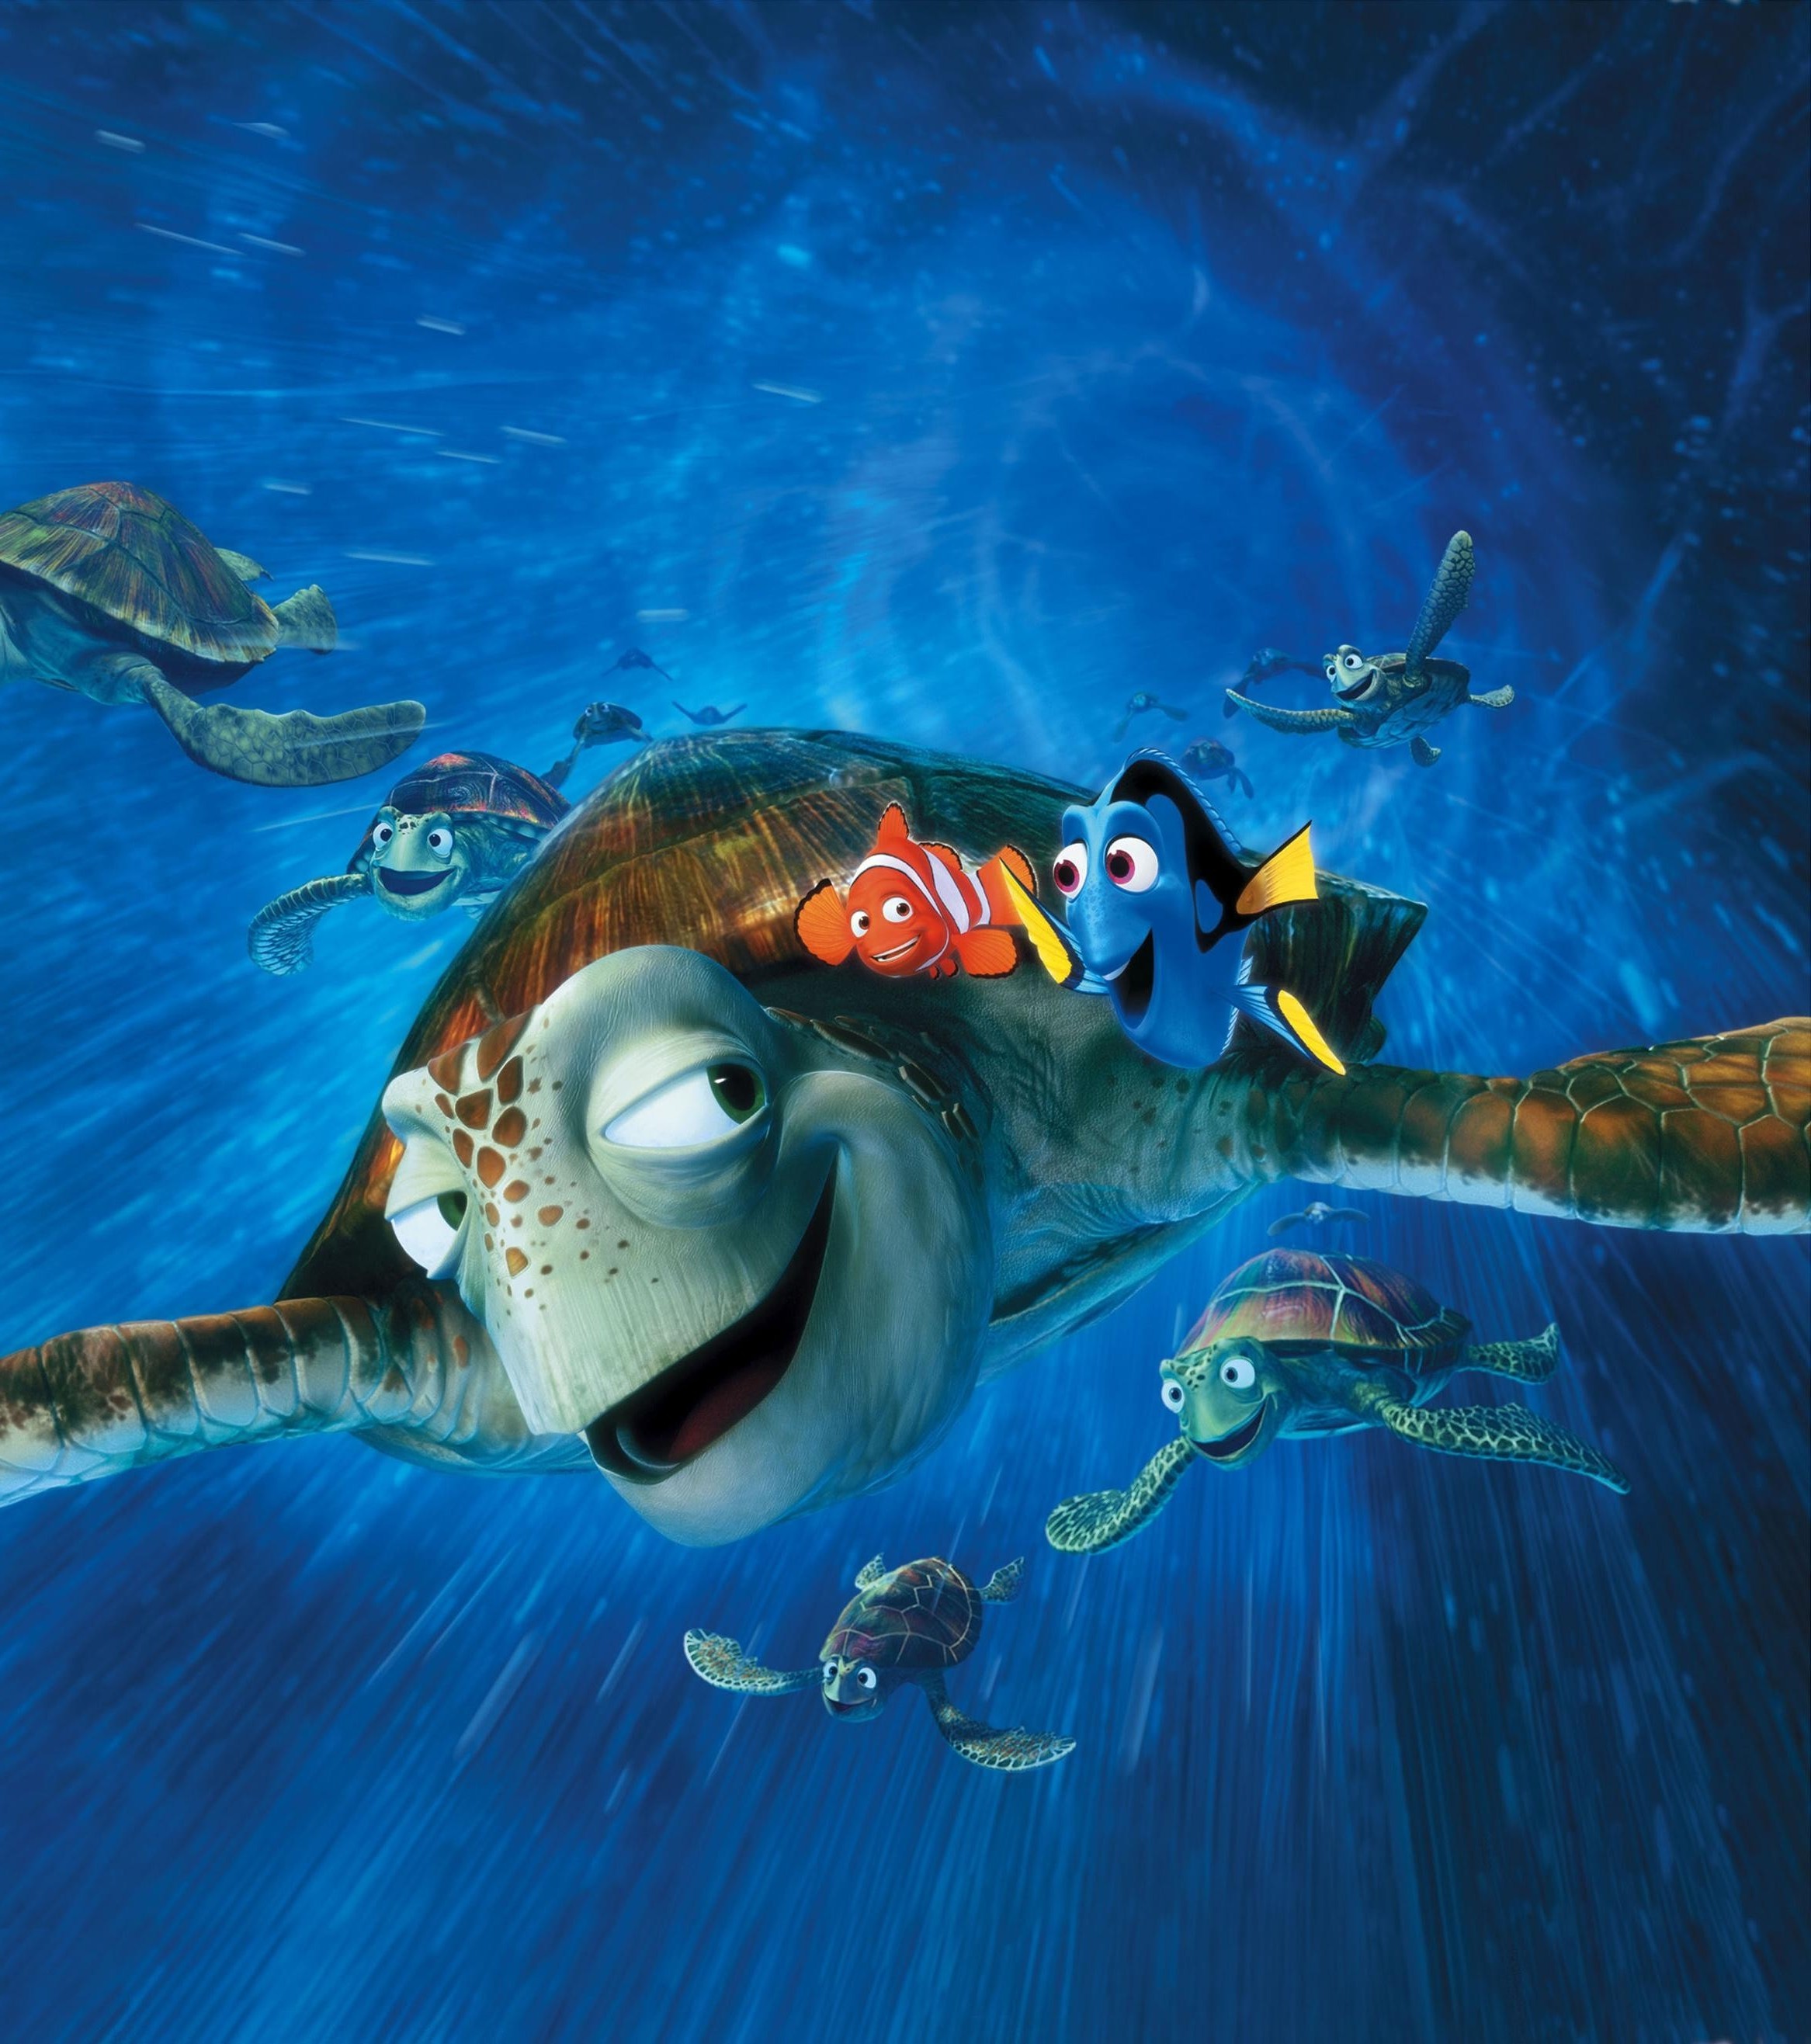 디즈니 영화 바탕 화면,녹색 바다 거북,바다 거북,터틀,해양 생물학,바다 거북 바다 거북